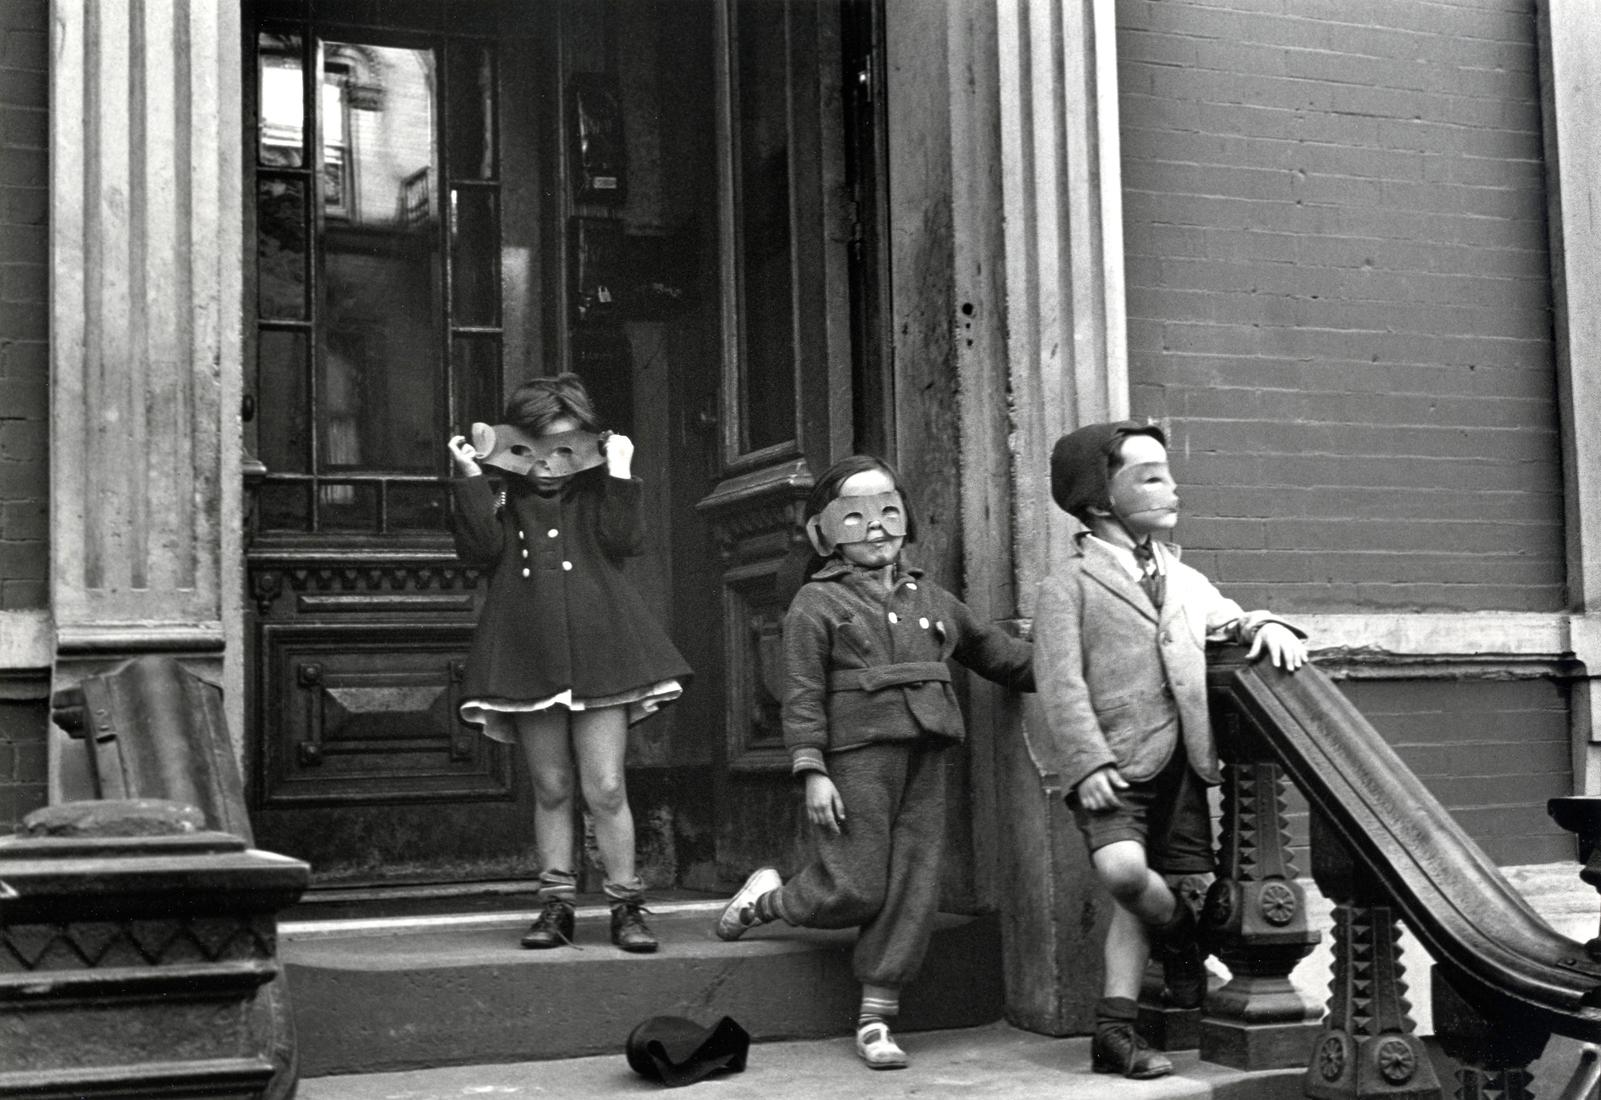 Helen Levitt Portrait Photograph – New York (drei Kinder mit Masken)